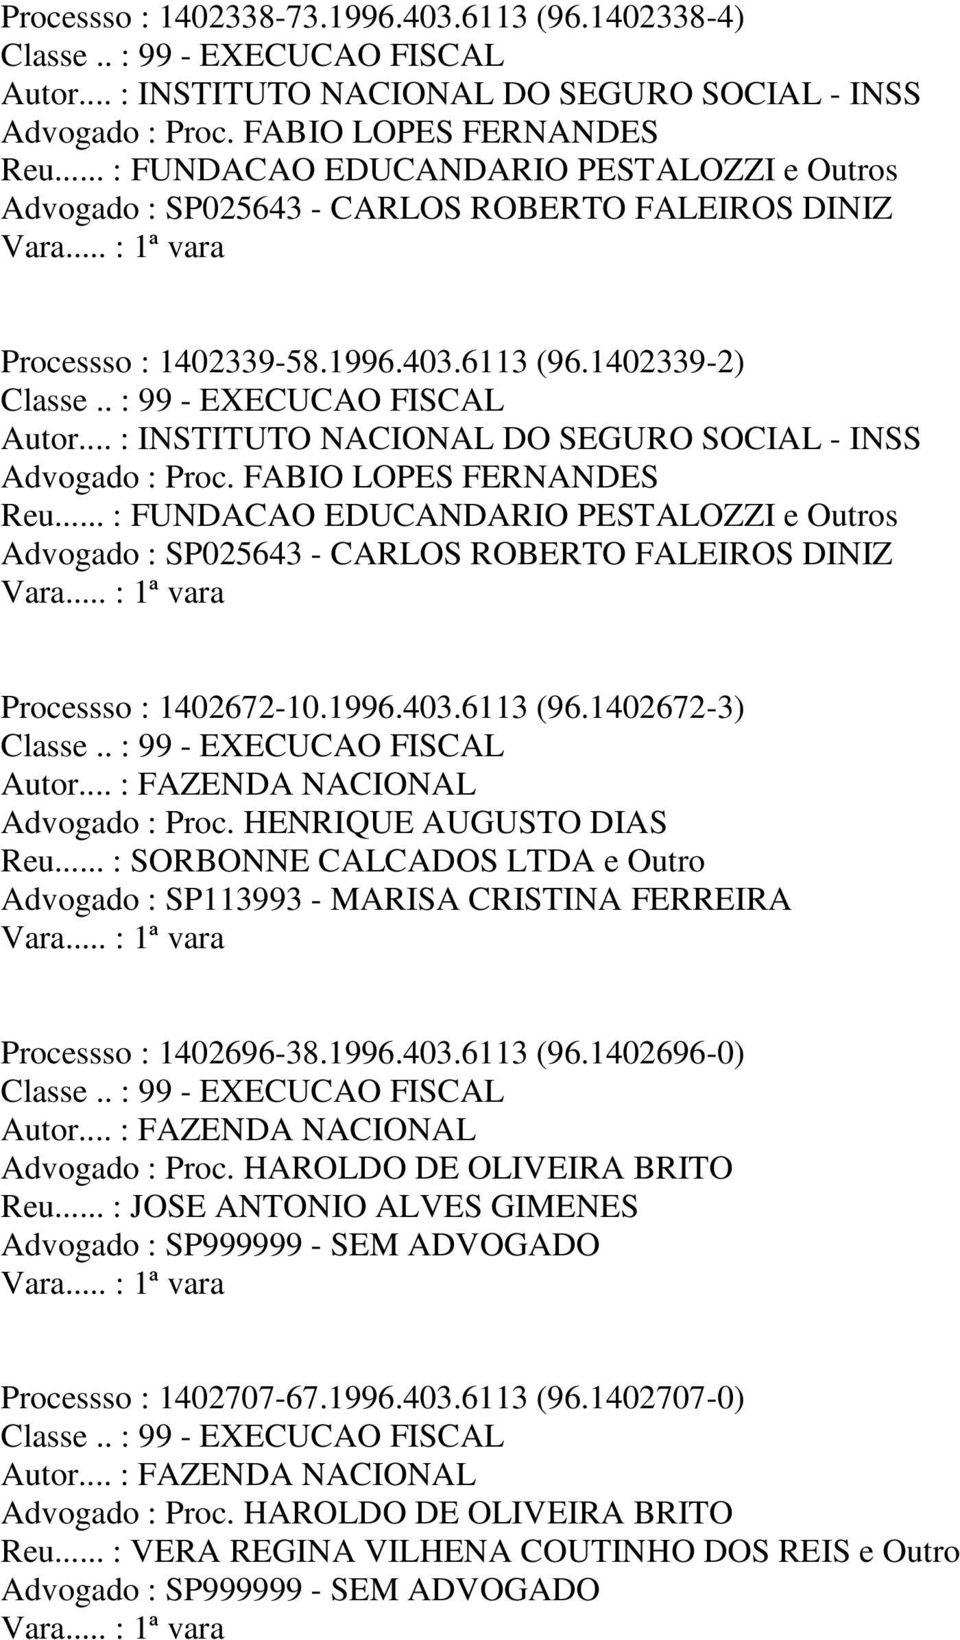 .. : FUNDACAO EDUCANDARIO PESTALOZZI e Outros Processso : 1402672-10.1996.403.6113 (96.1402672-3) Reu.